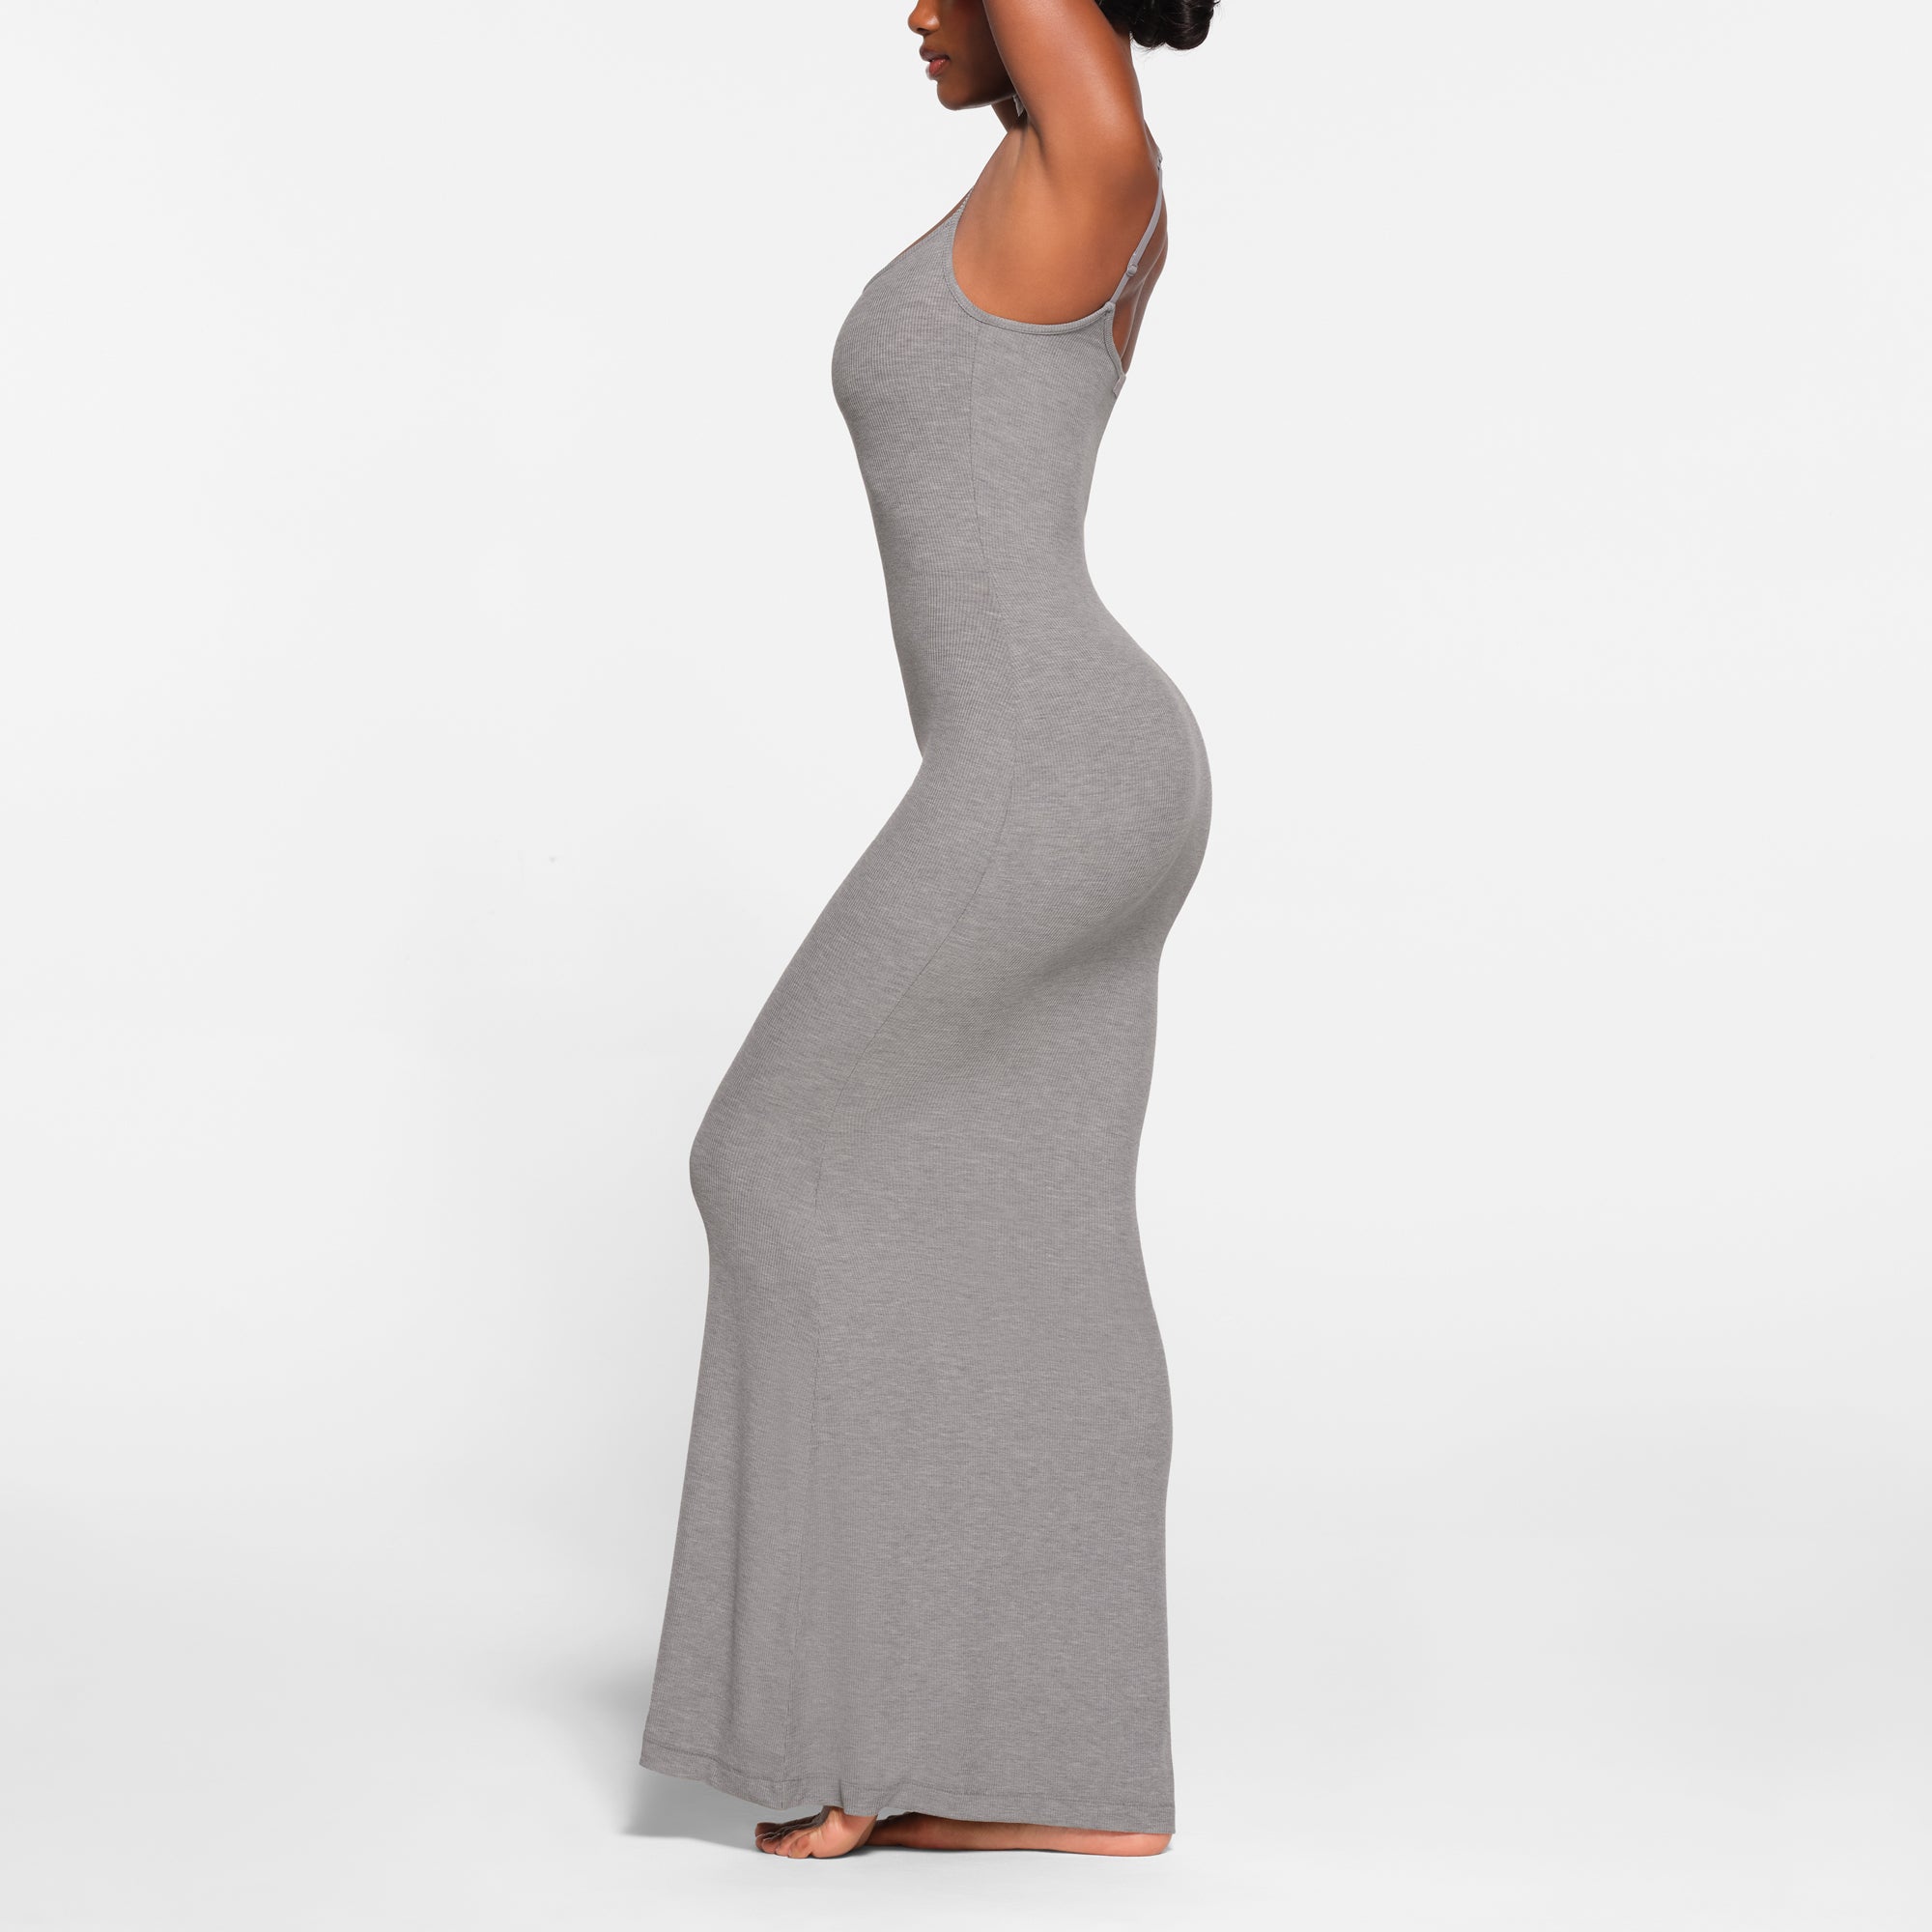 SKIMS - Grey Skims Dress on Designer Wardrobe